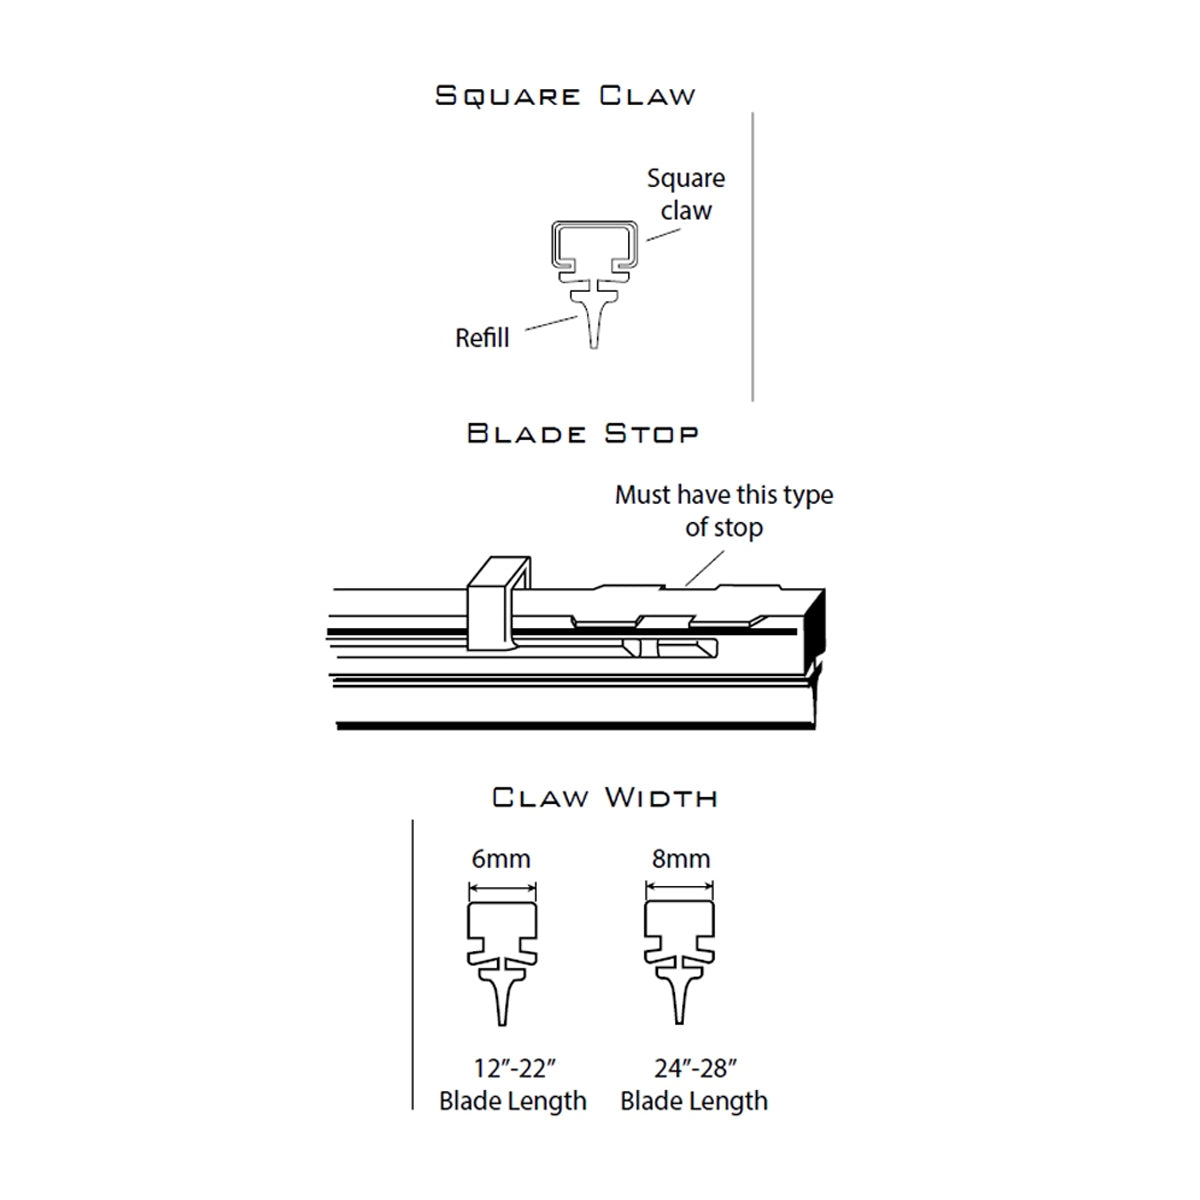 PIAA SILICONE WIPER REFILL for Radix & Aero Vogue Blade ( 19" ) ( 6mm ) (Barcode: 722935940489 )